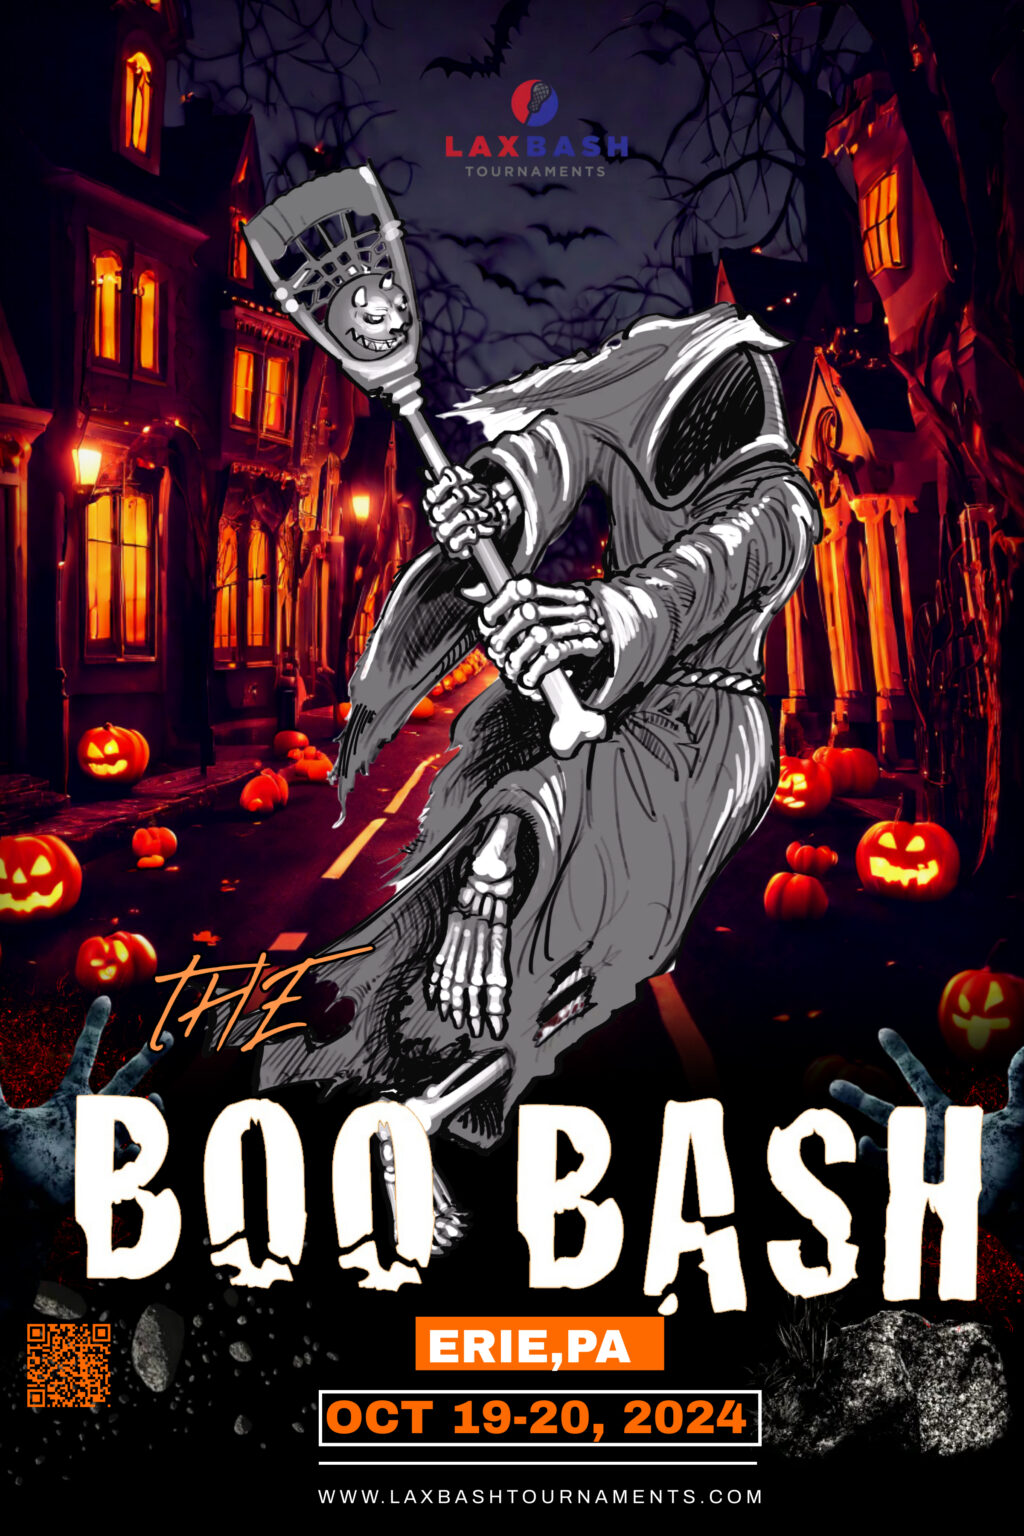 The Boo Bash